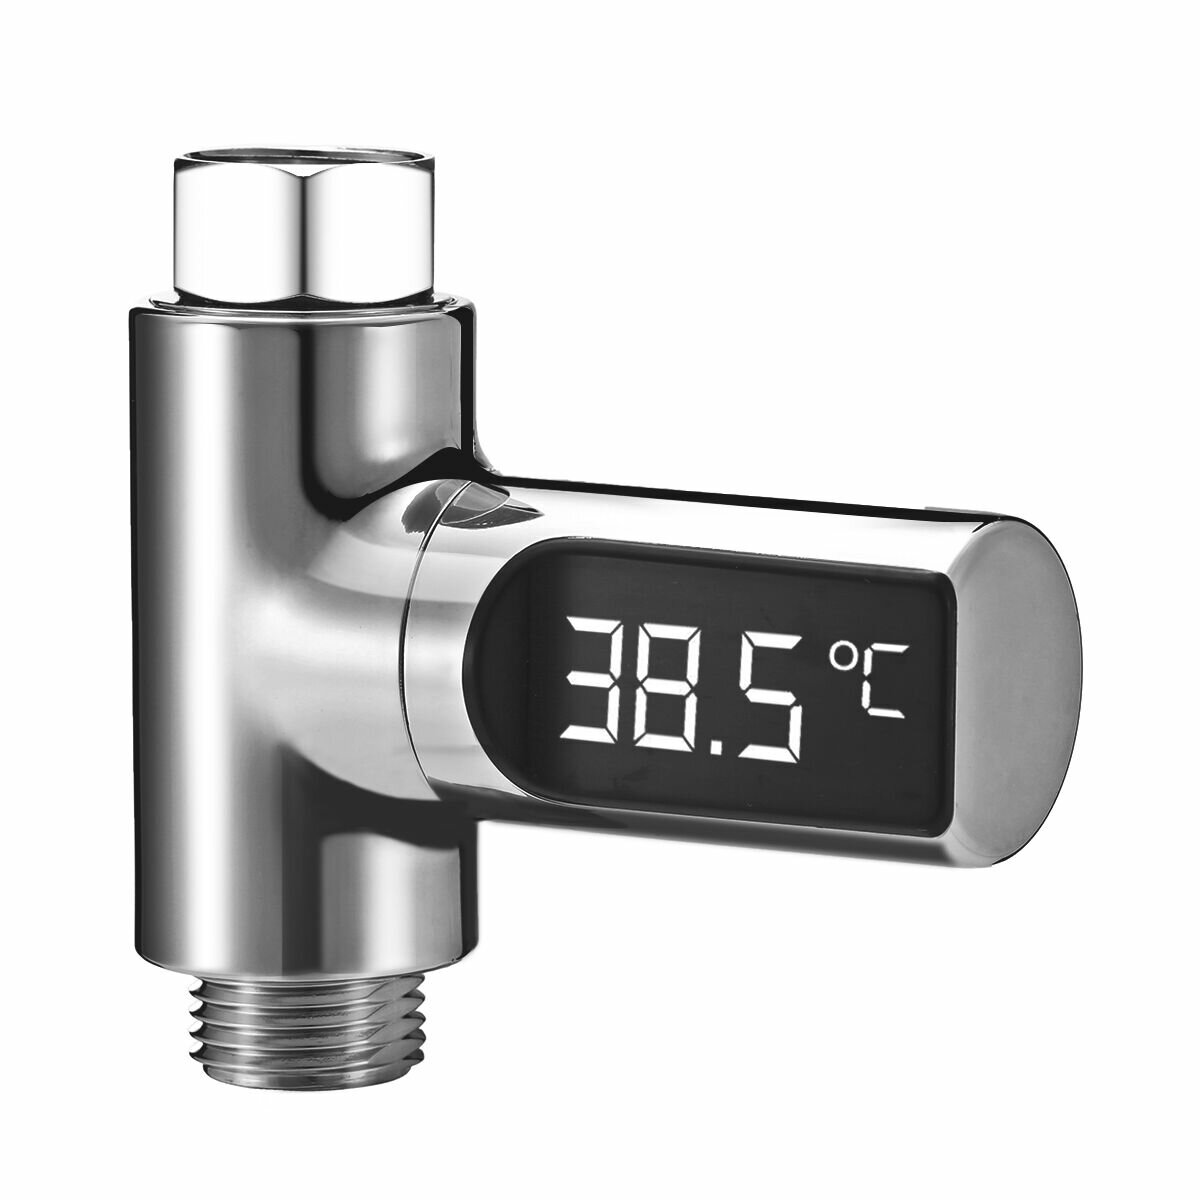 LW-101 LED-display Home Waterdouche Thermometer Flow Zelfopwekkende elektriciteit Watertemperatuurmeter Monitor Energie Smart Meter voor babyverzorging